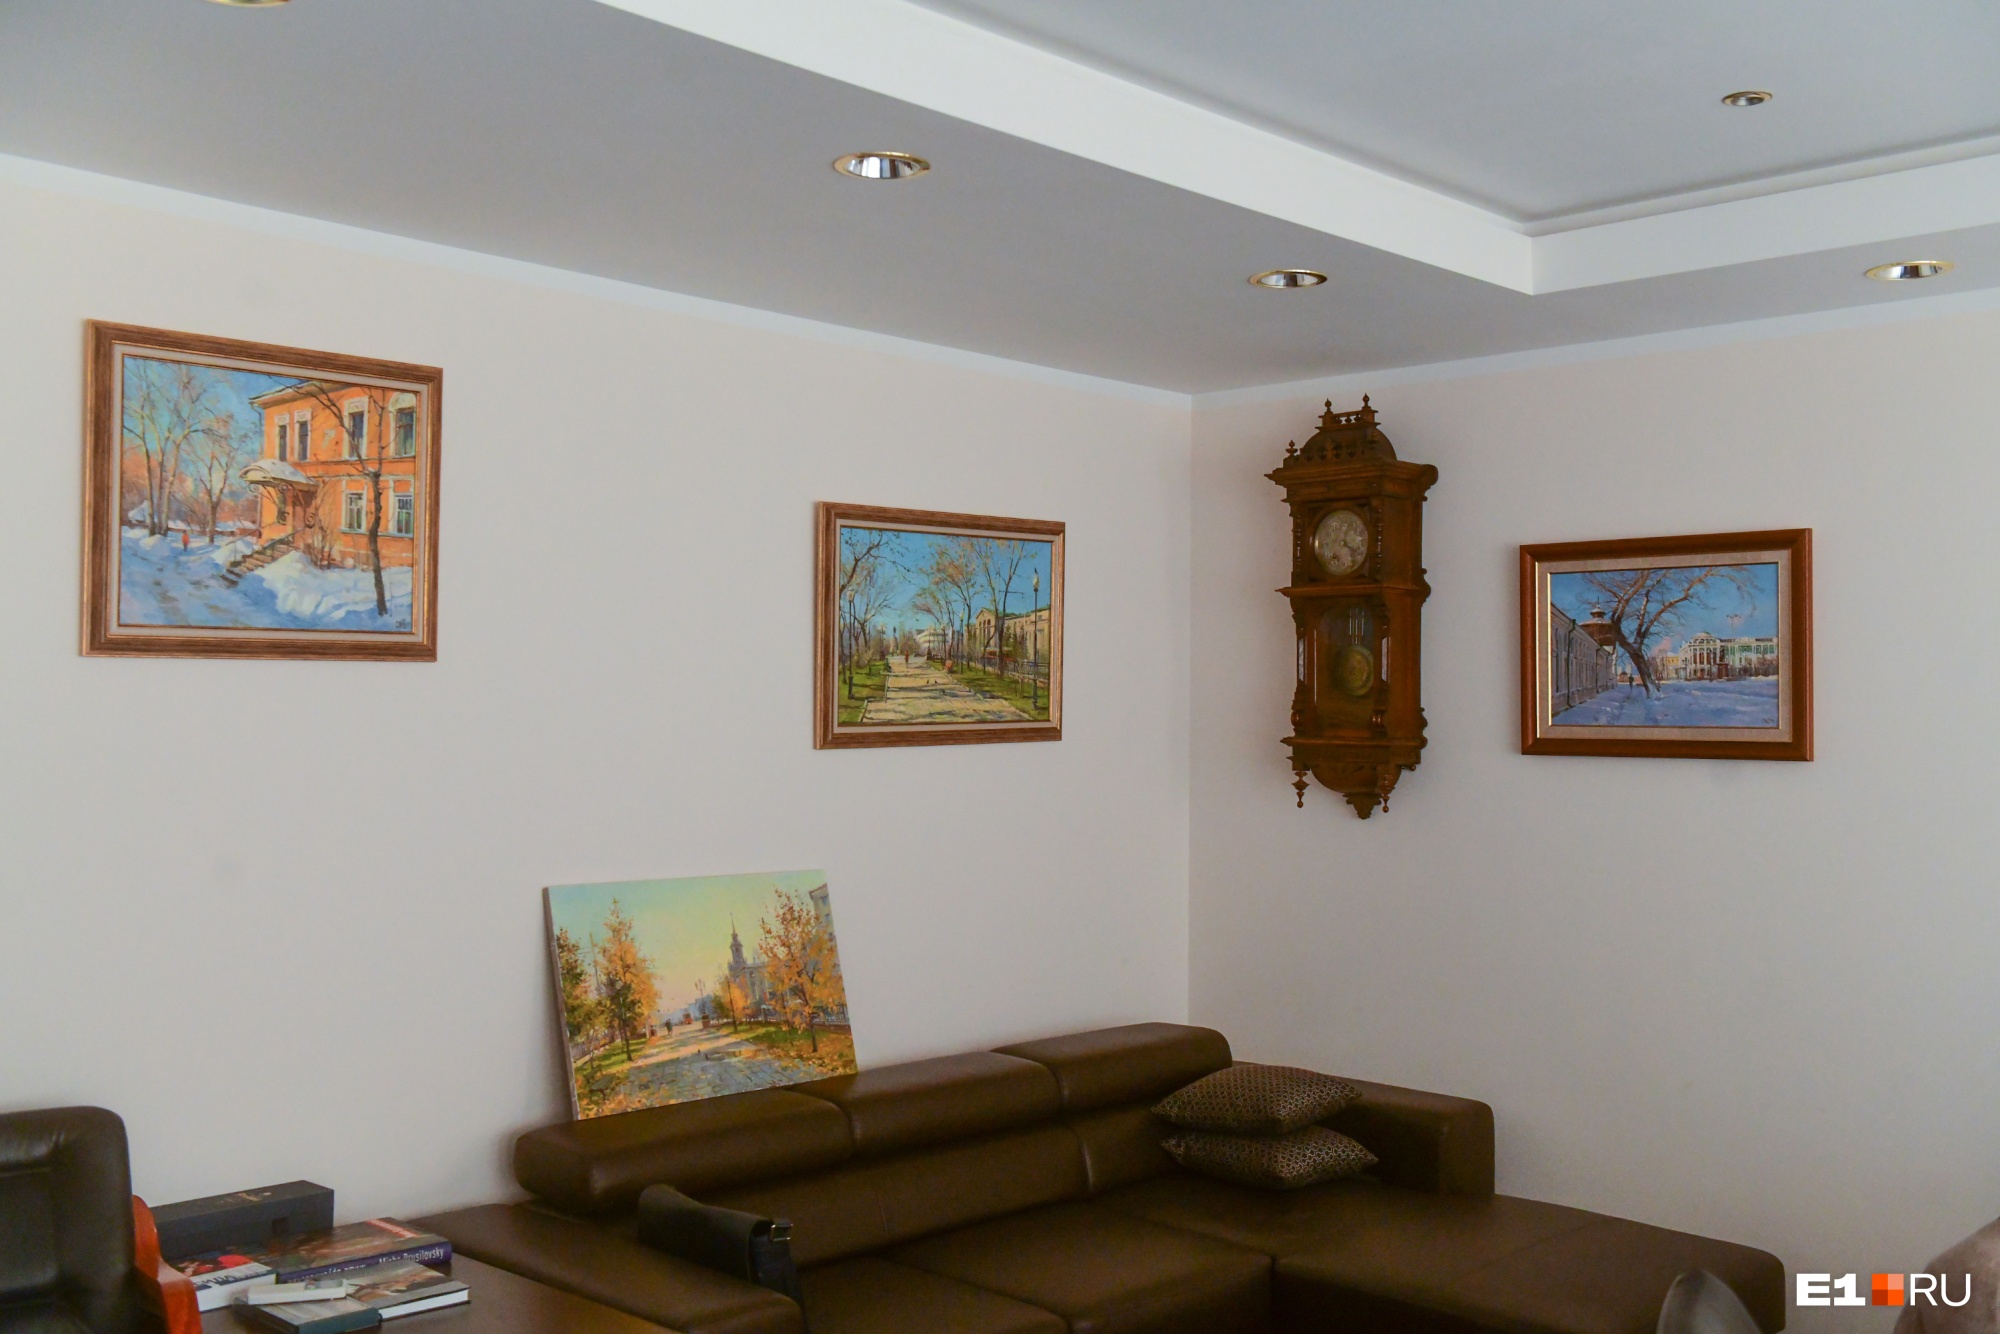 Сейчас часть собрания работ уральских художников хранится в кабинете нового собственника здания бывшего склада